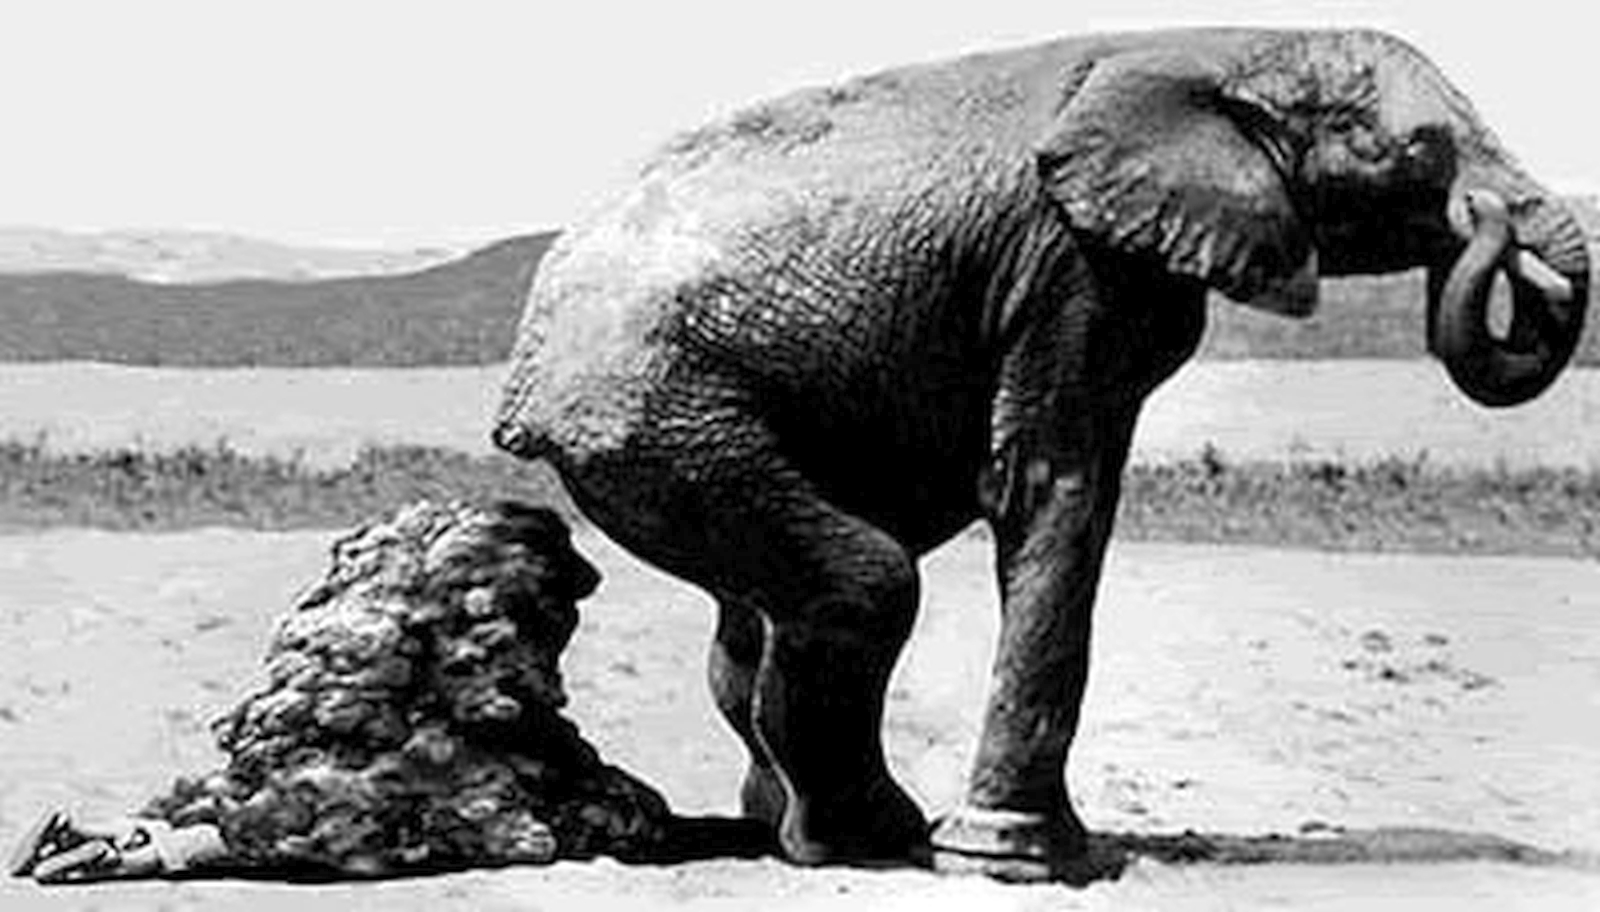 голова человека в жопе у слона фото 86